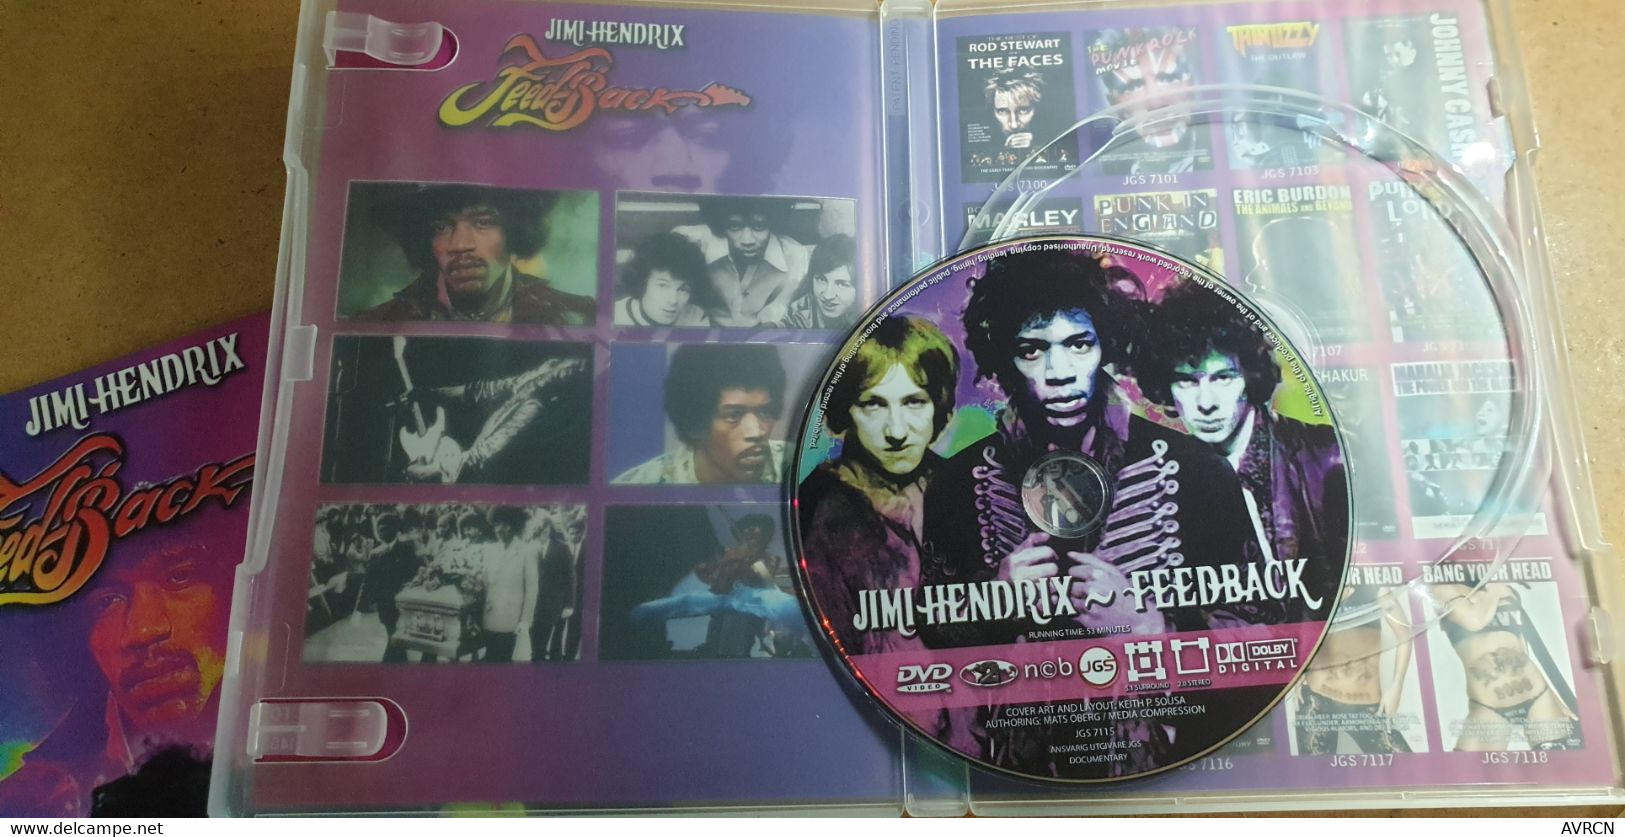 JIMI HENDRIX - FEEDBACK - DVD « NCB-JGS 7115 ». - Muziek DVD's